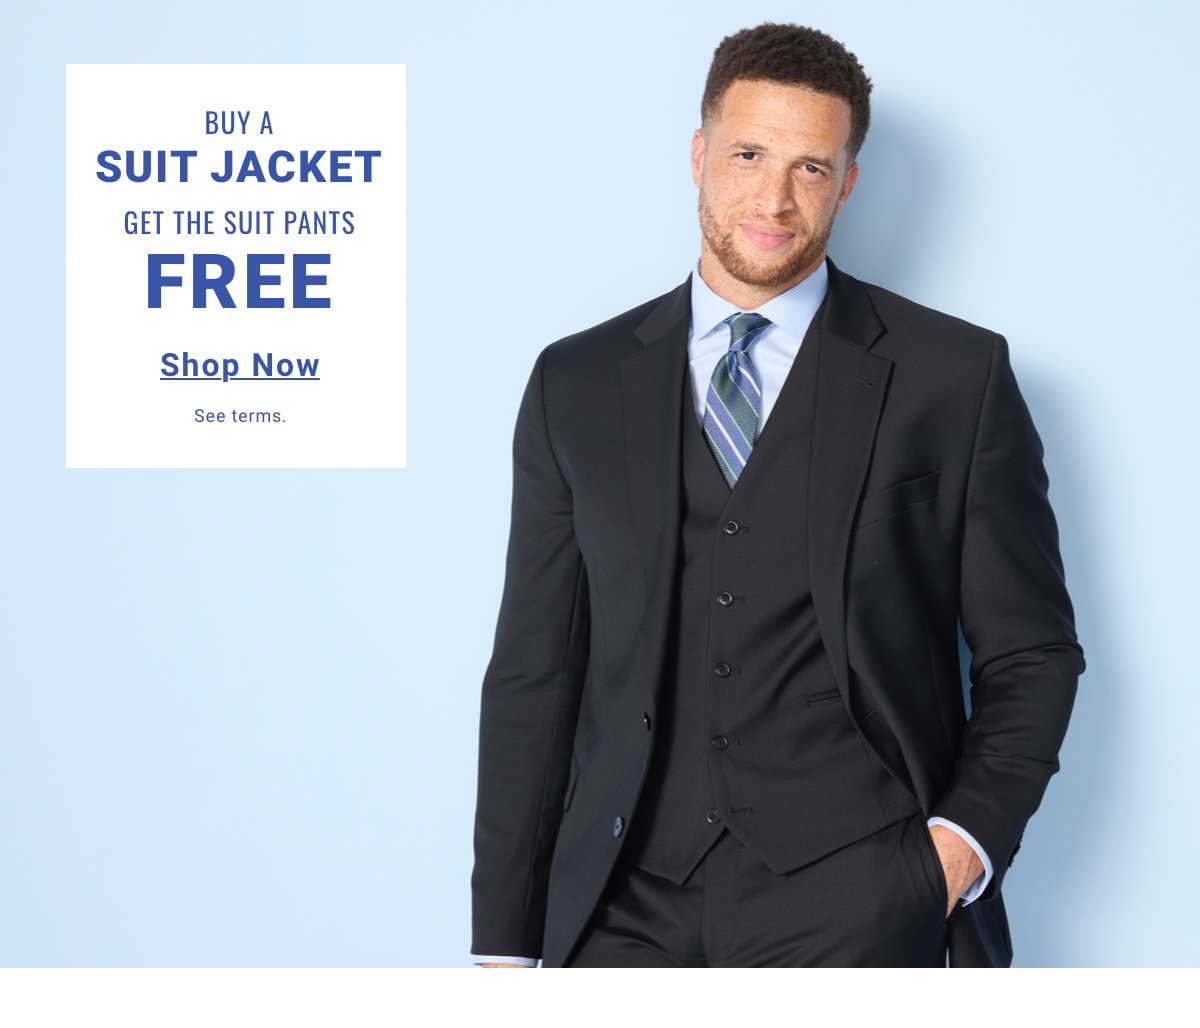 Buy a Suit Jacket. Get the Suit Pants Free